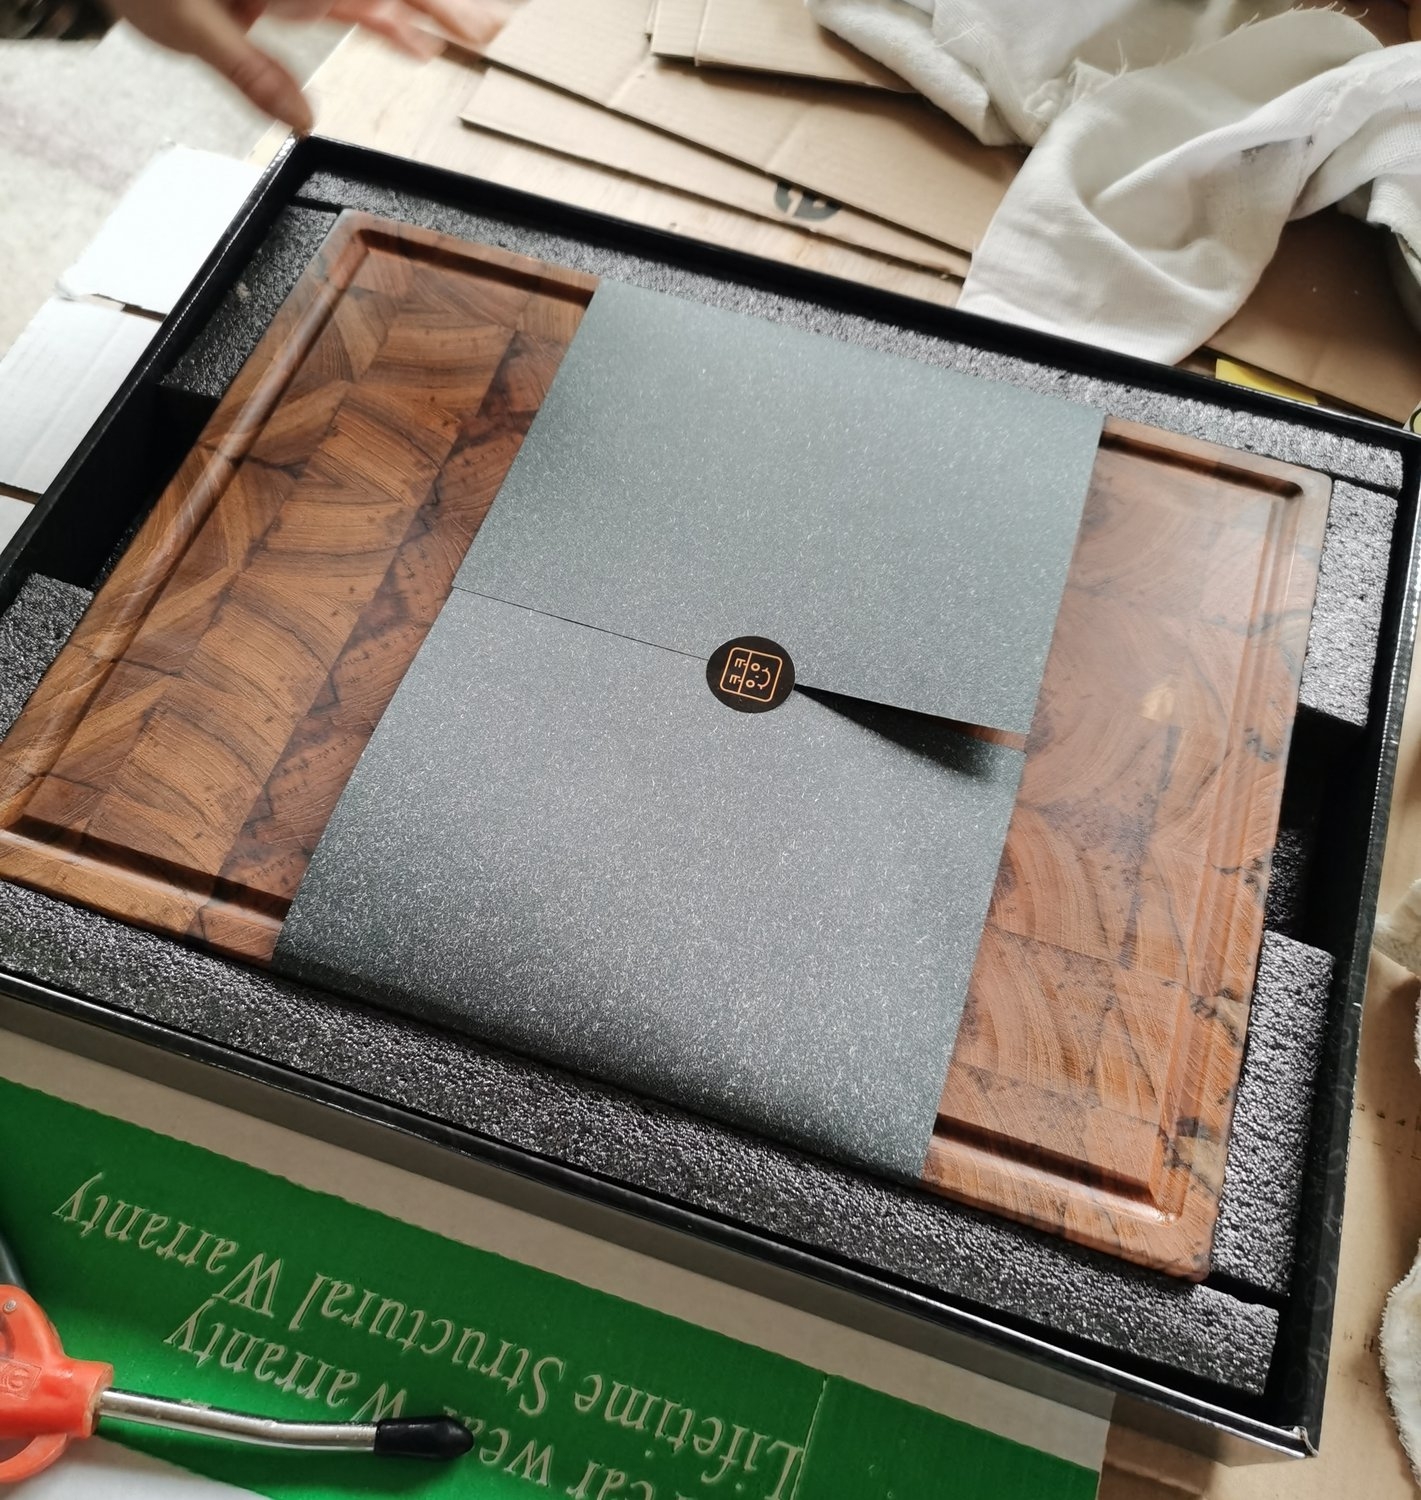 Burma gold teak wood cutting board with juice groove